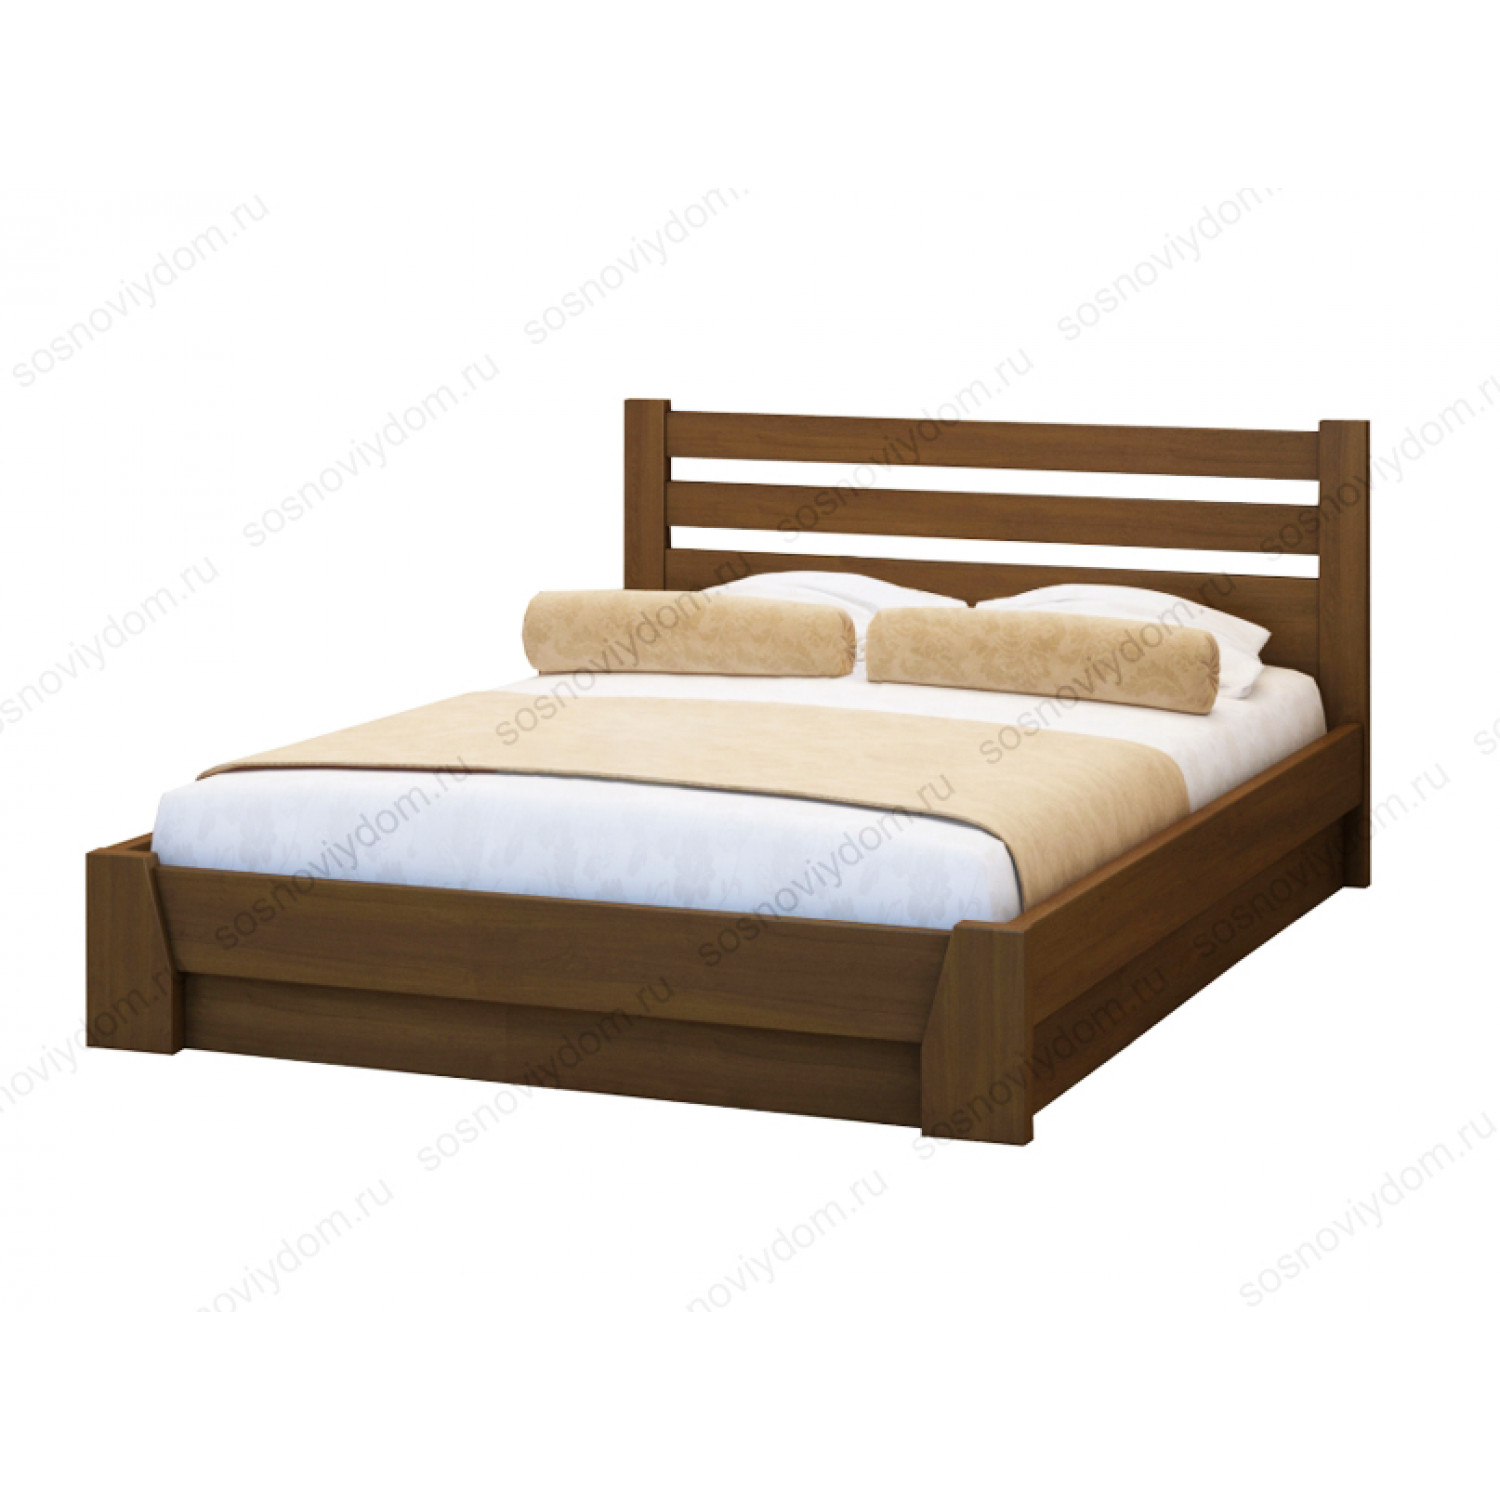 Купить кровать из массива в спб. Кровать minona Country.